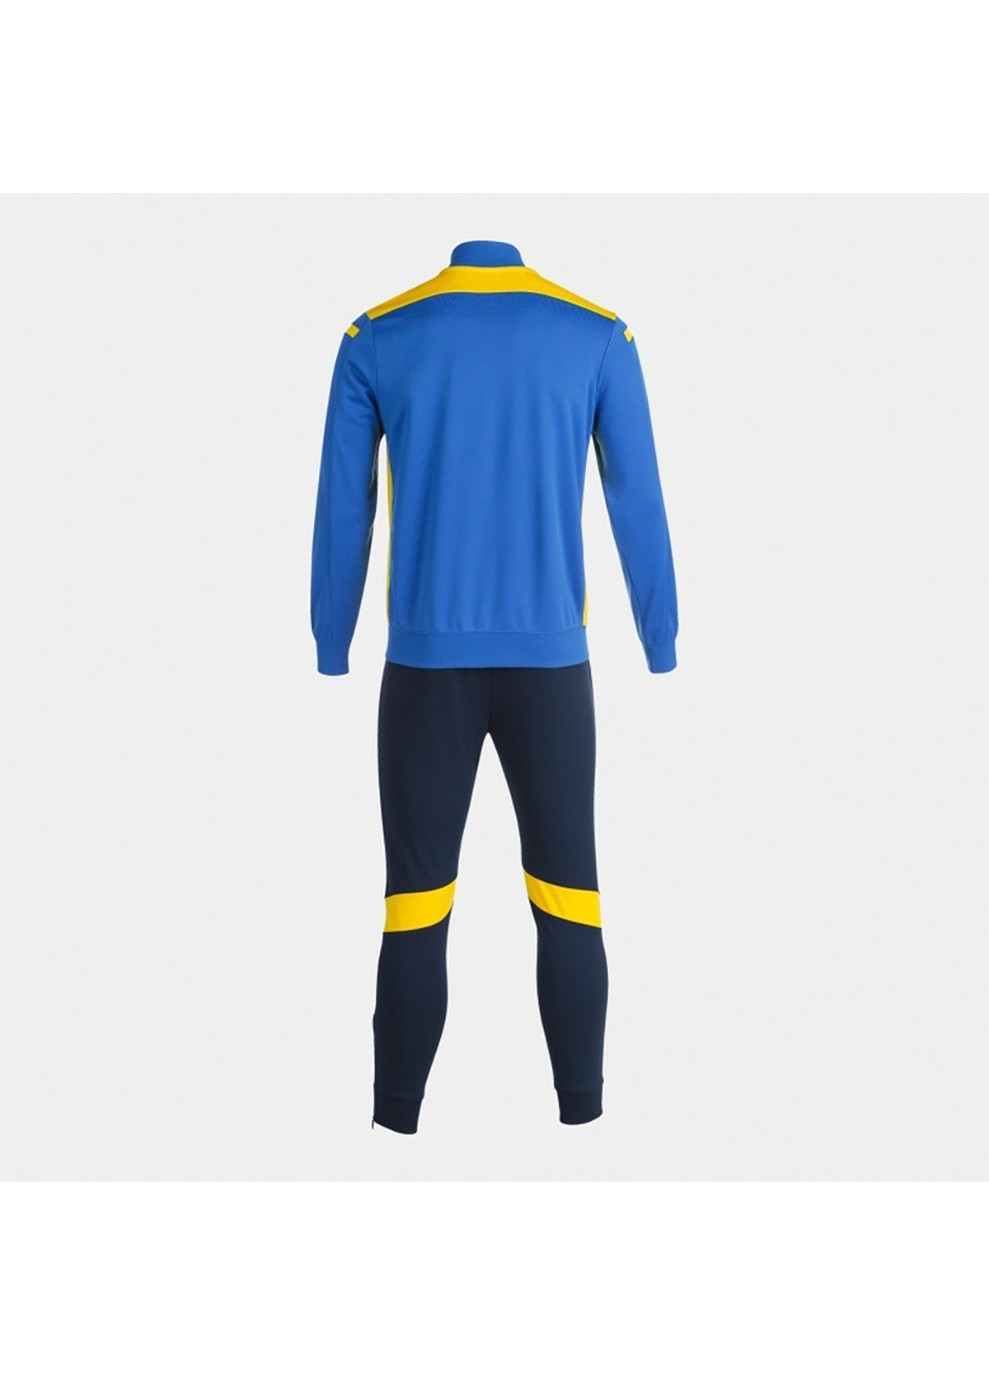 Чоловічий спортивний костюм CCHAPIONSHIP VI TRACKSUIT синій,блакитний,жовтий Joma (260646196)